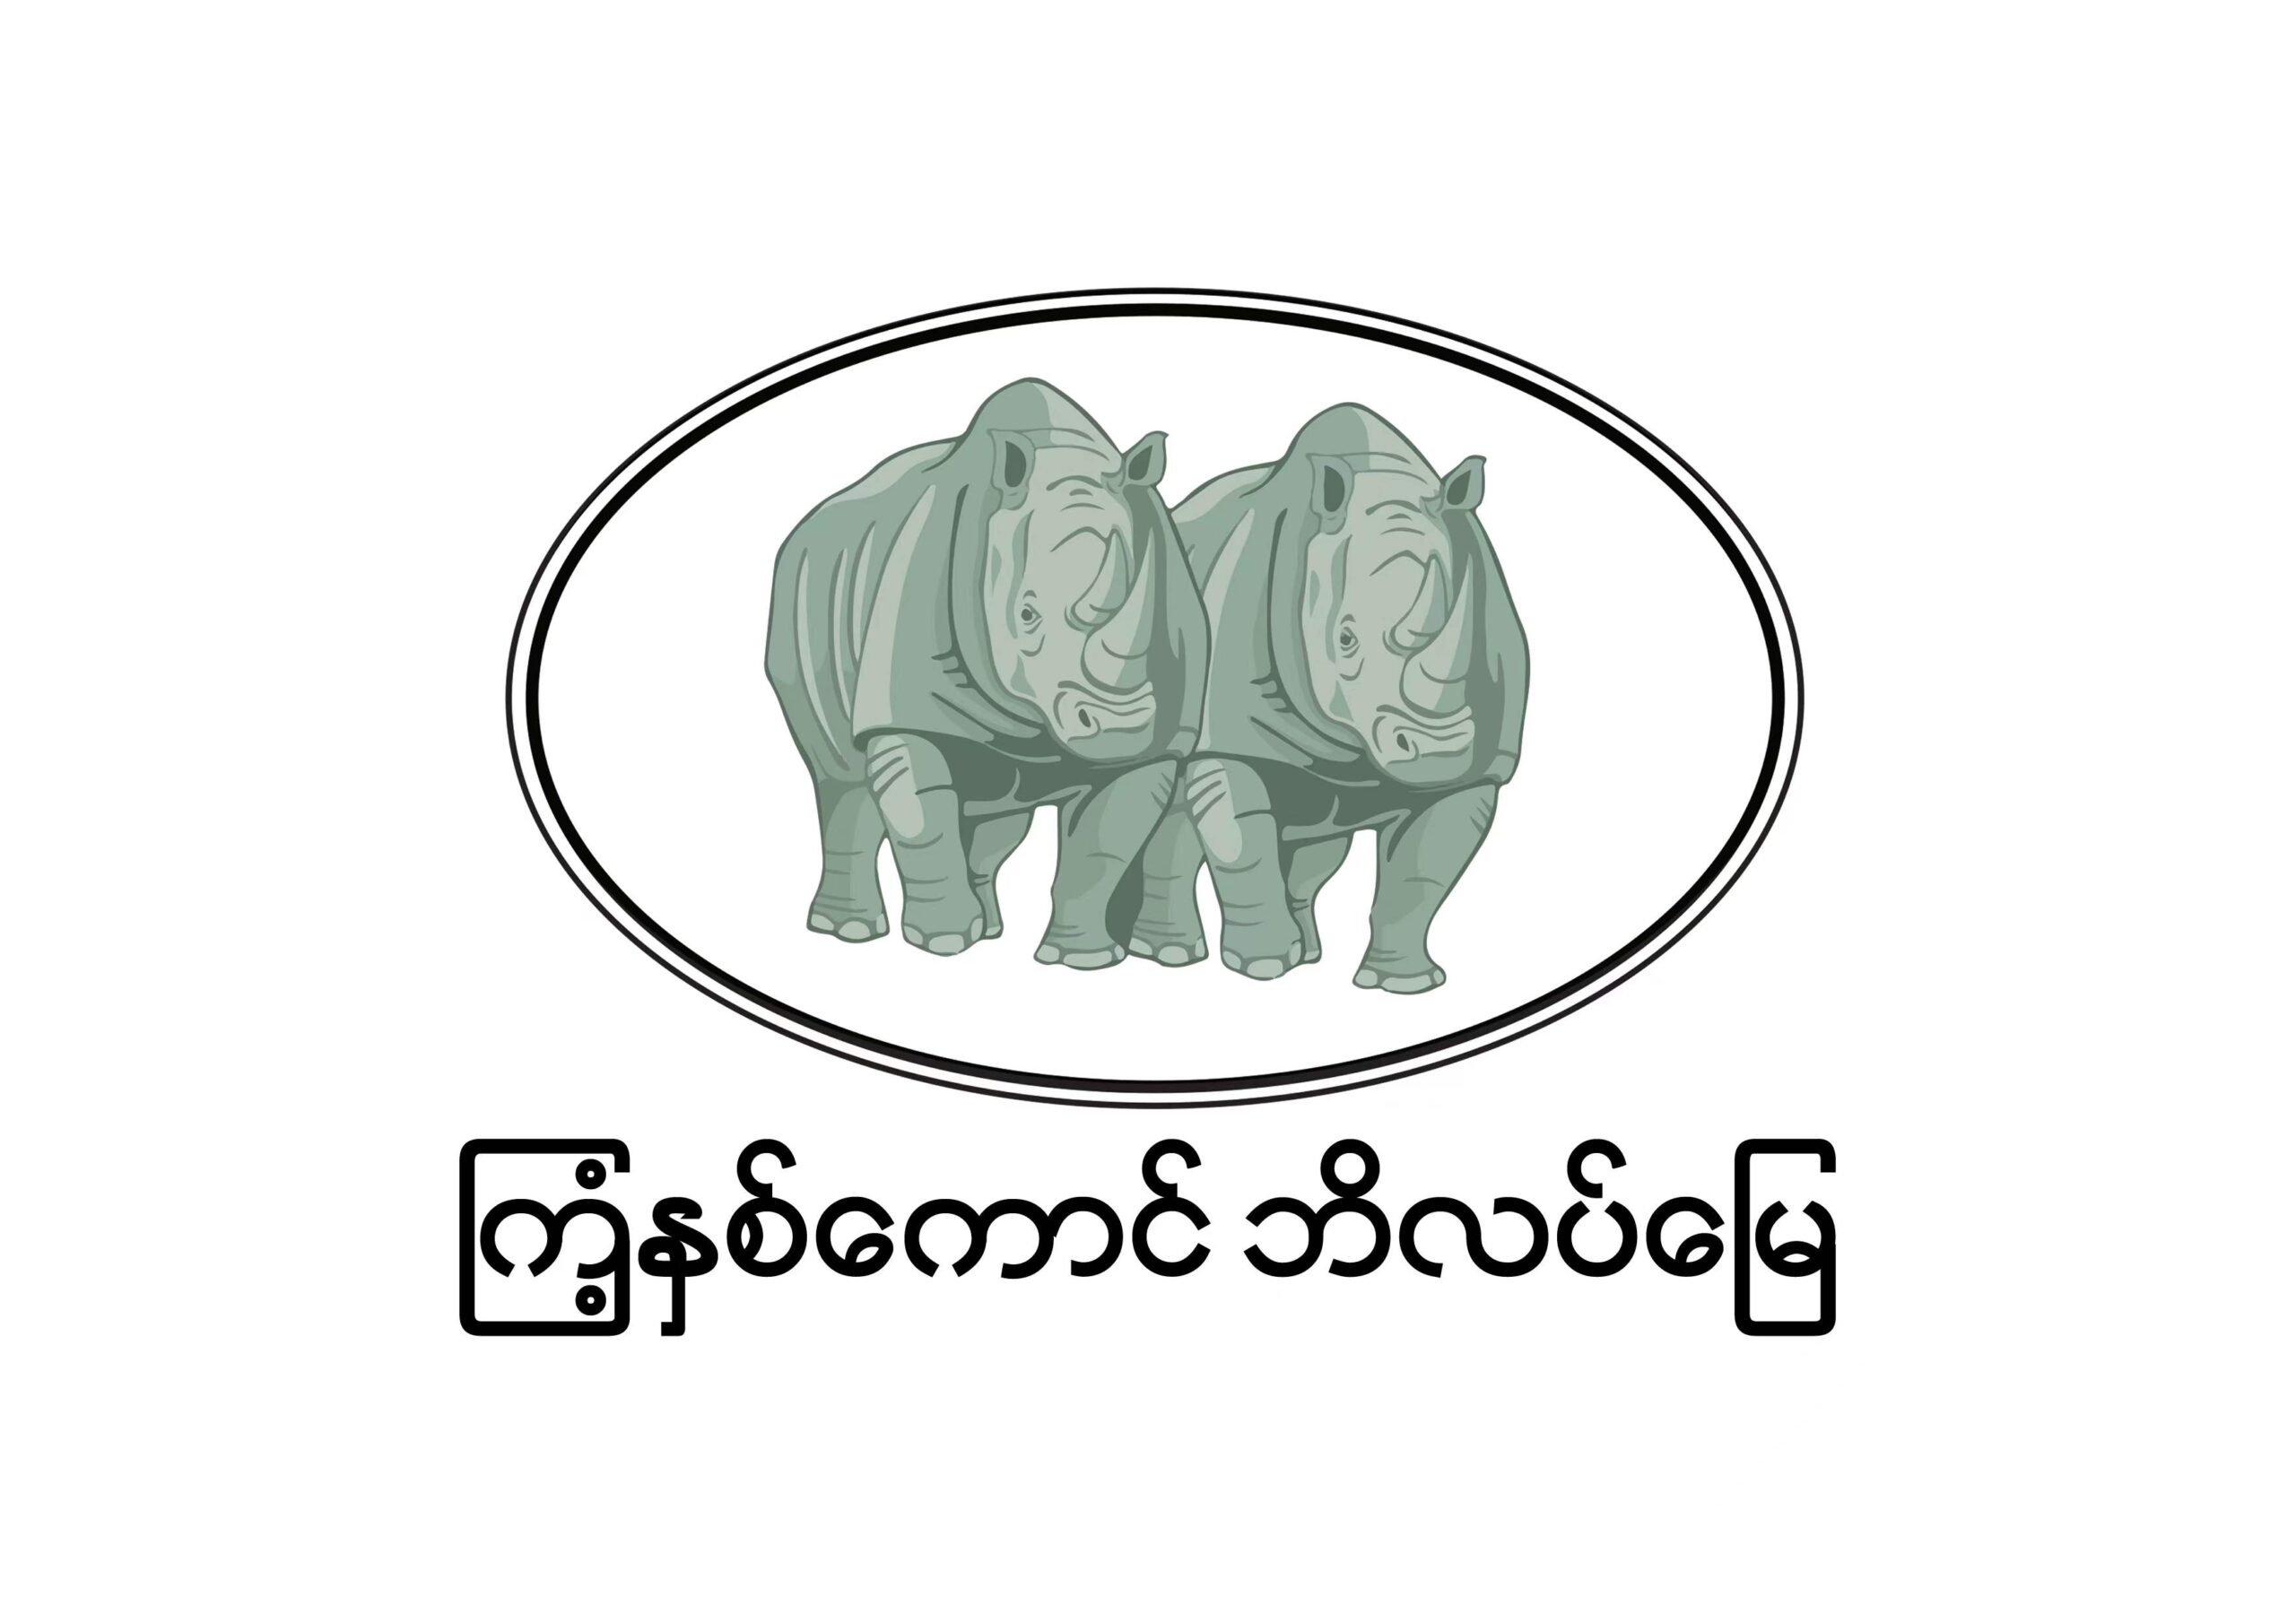 မြန်မာနိုင်ငံသားပိုင် ပုဂ္ဂလိကဘိလပ်မြေစက်ရုံ တစ်ခုဖြစ်တဲ့ ကြံ့နှစ်ကောင် ဘိလပ်မြေ …